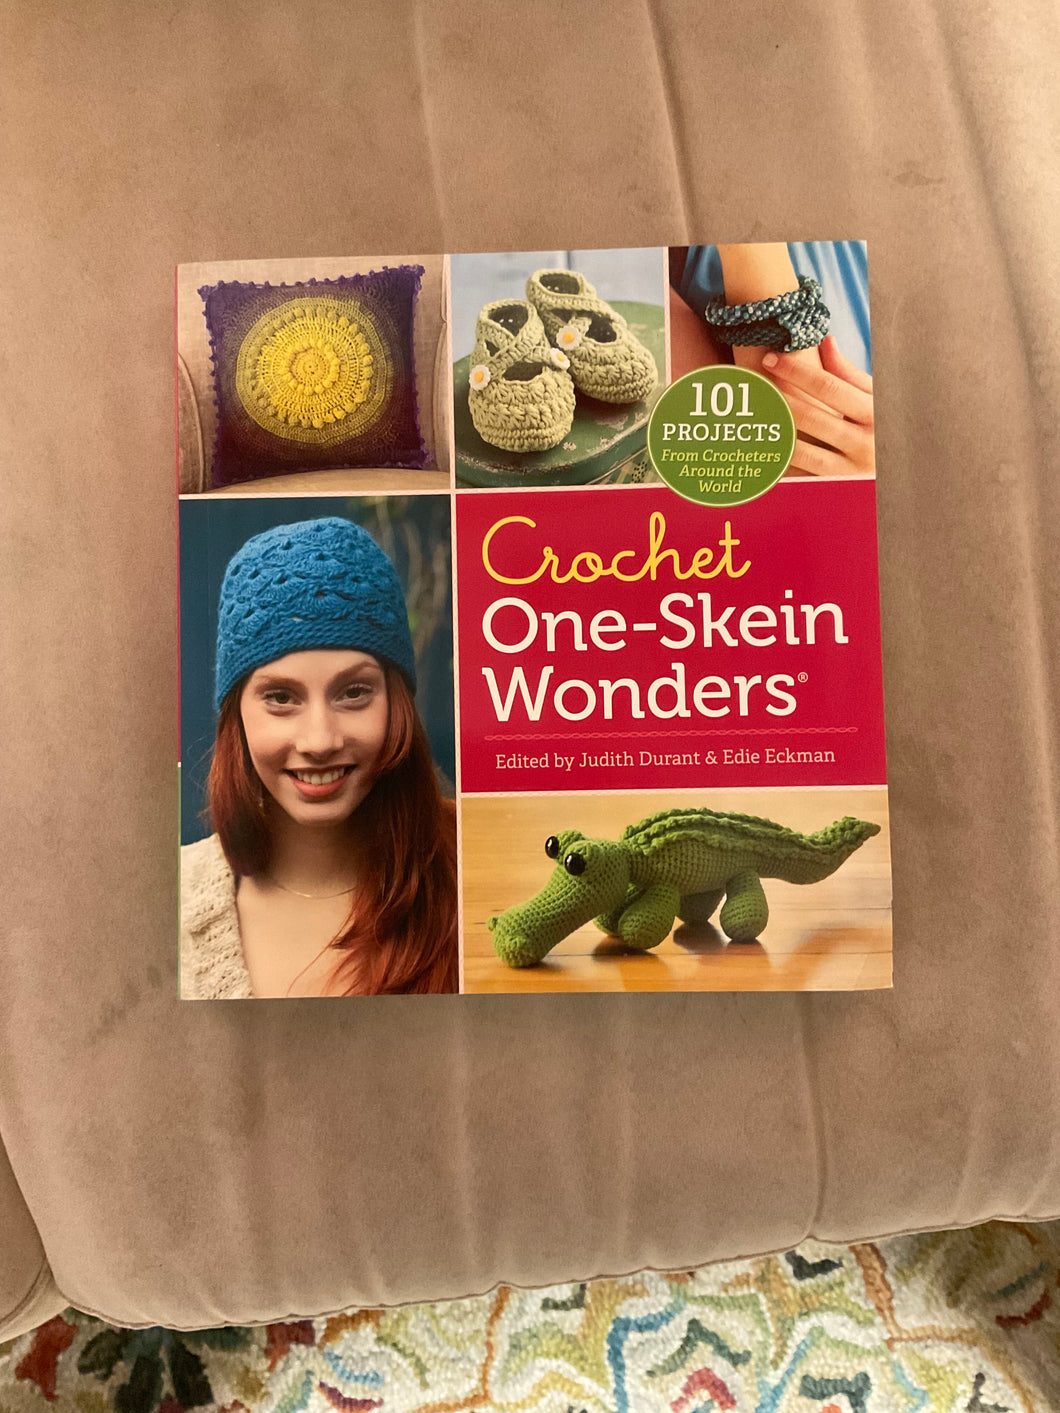 Crochet One-Skein Wonders by Judith Durant & Edie Eckman